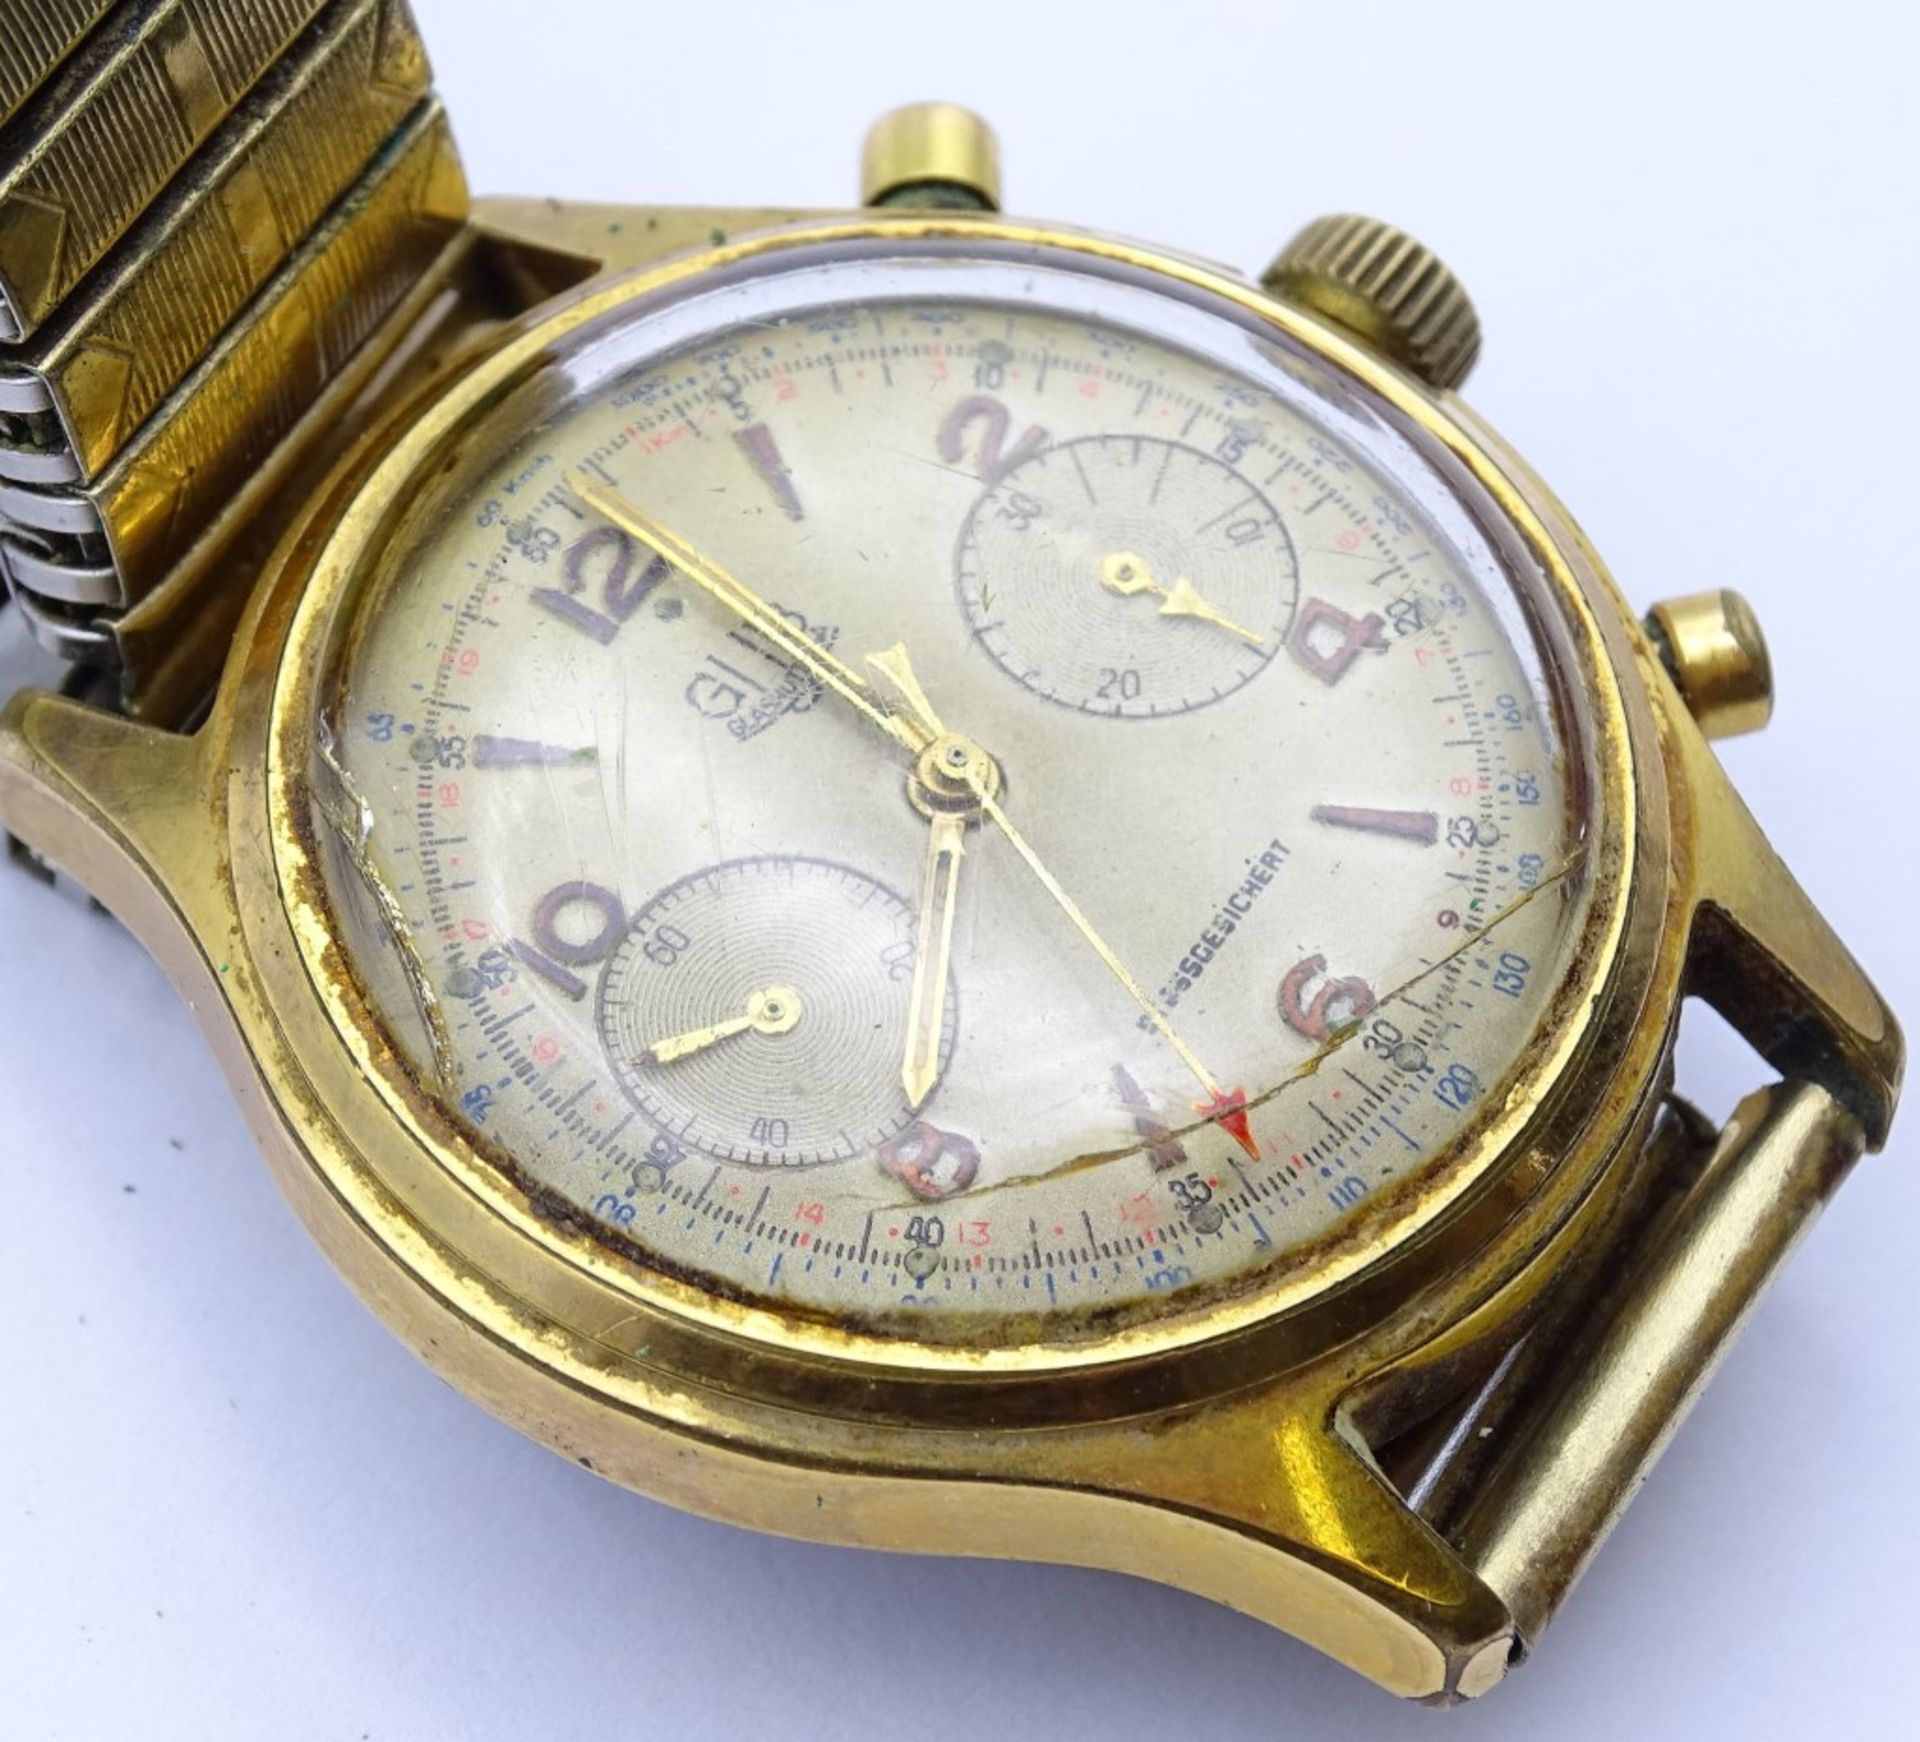 Zwei Armbanduhren "GUB",beide mechanisch,Werke laufen,vergoldet,Alters-u. Gebrauchsspuren, d-33- - Bild 9 aus 9